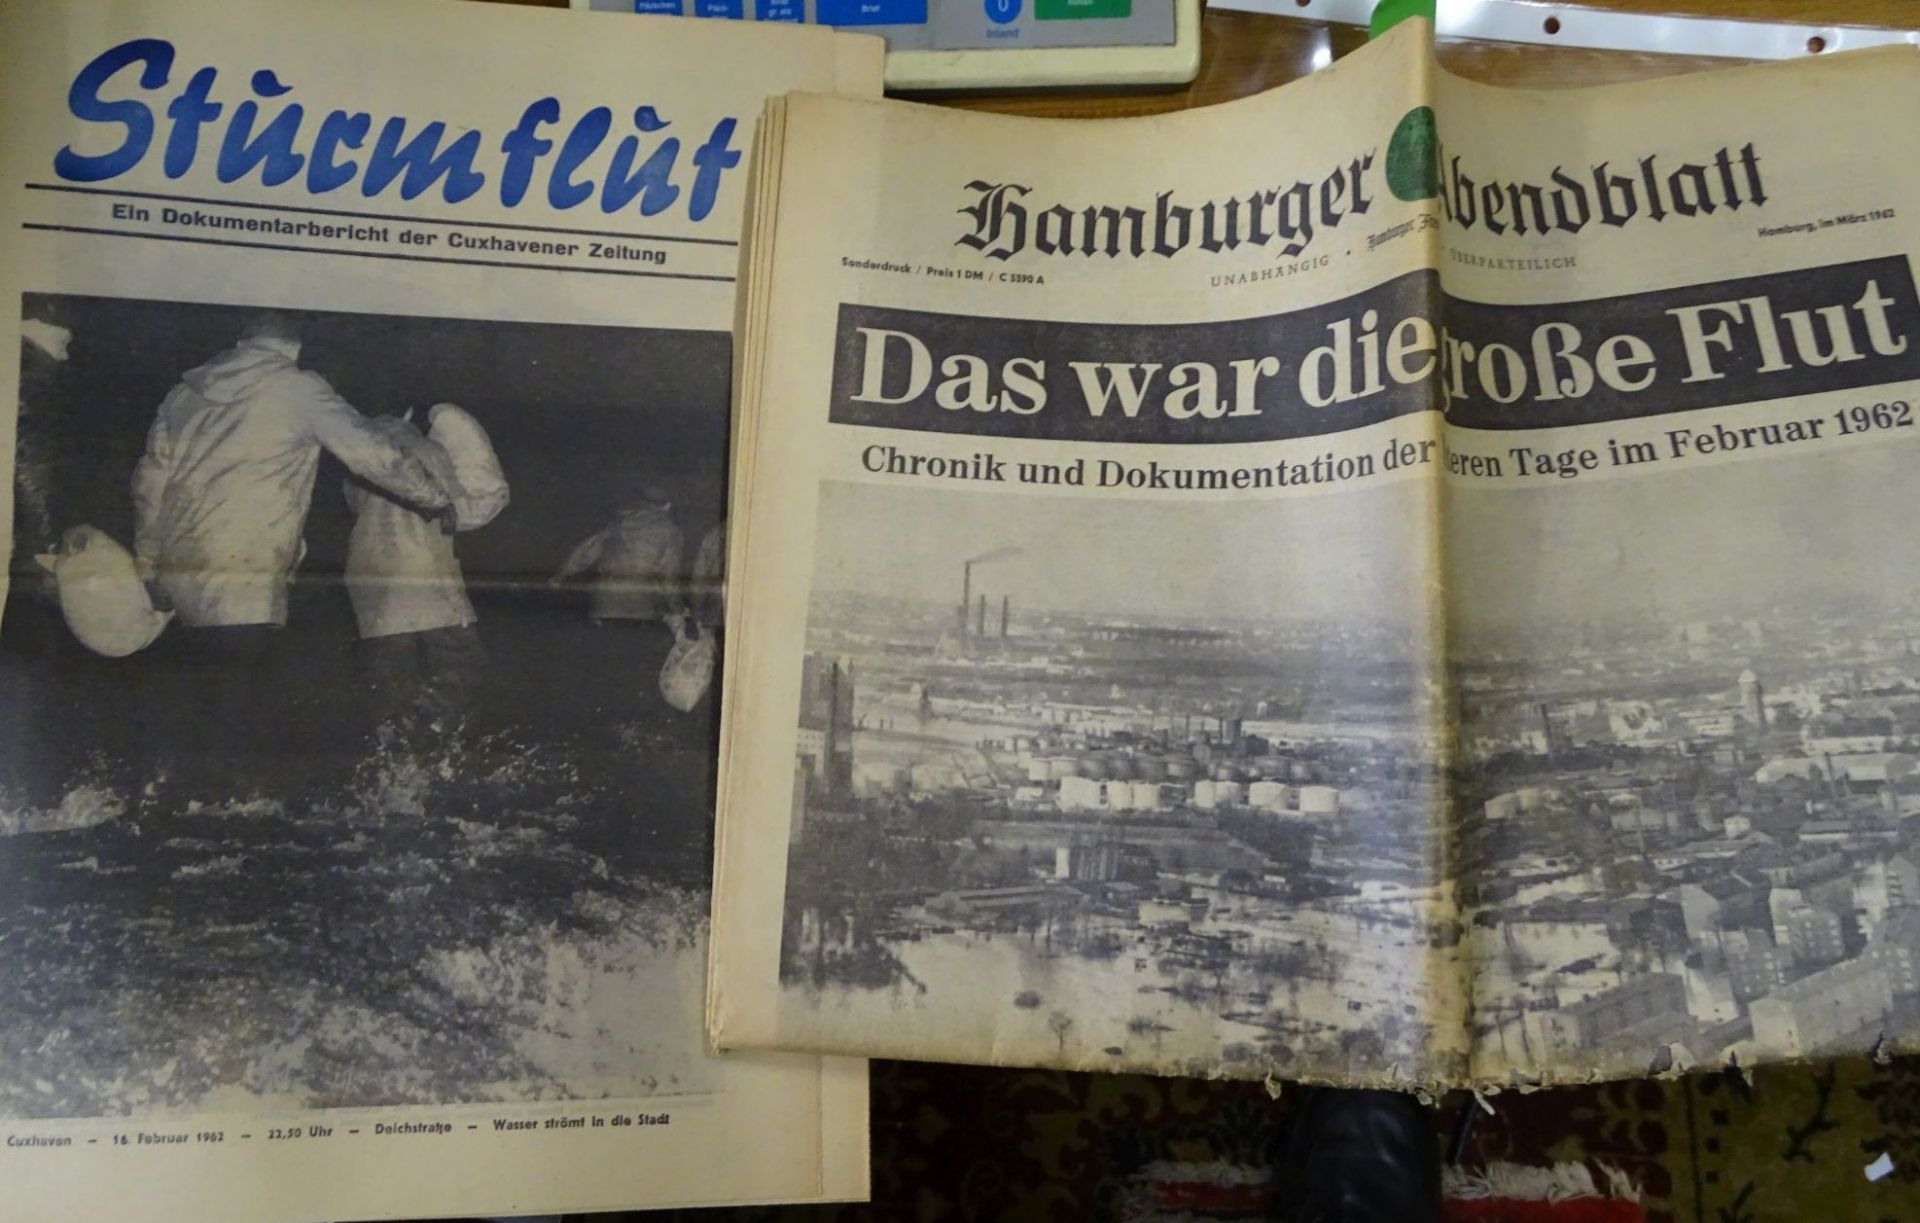 2x Zeitungen über die grosse Sturmflut 1062, Hamburger Abendblatt und Cuxhavener Zeitun- - -22.